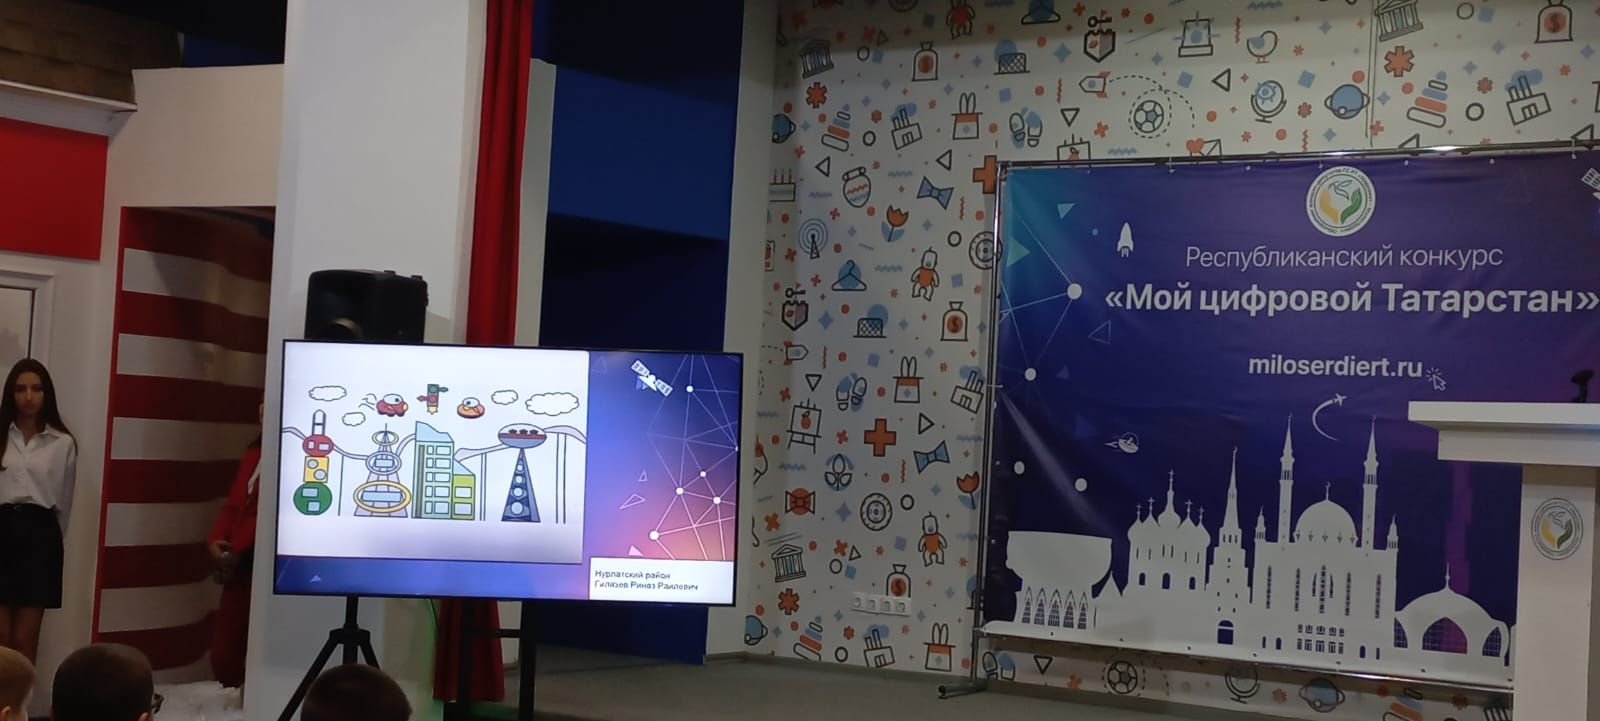 Школьники Нурлата стали победителями конкурса «Мой цифровой Татарстан»